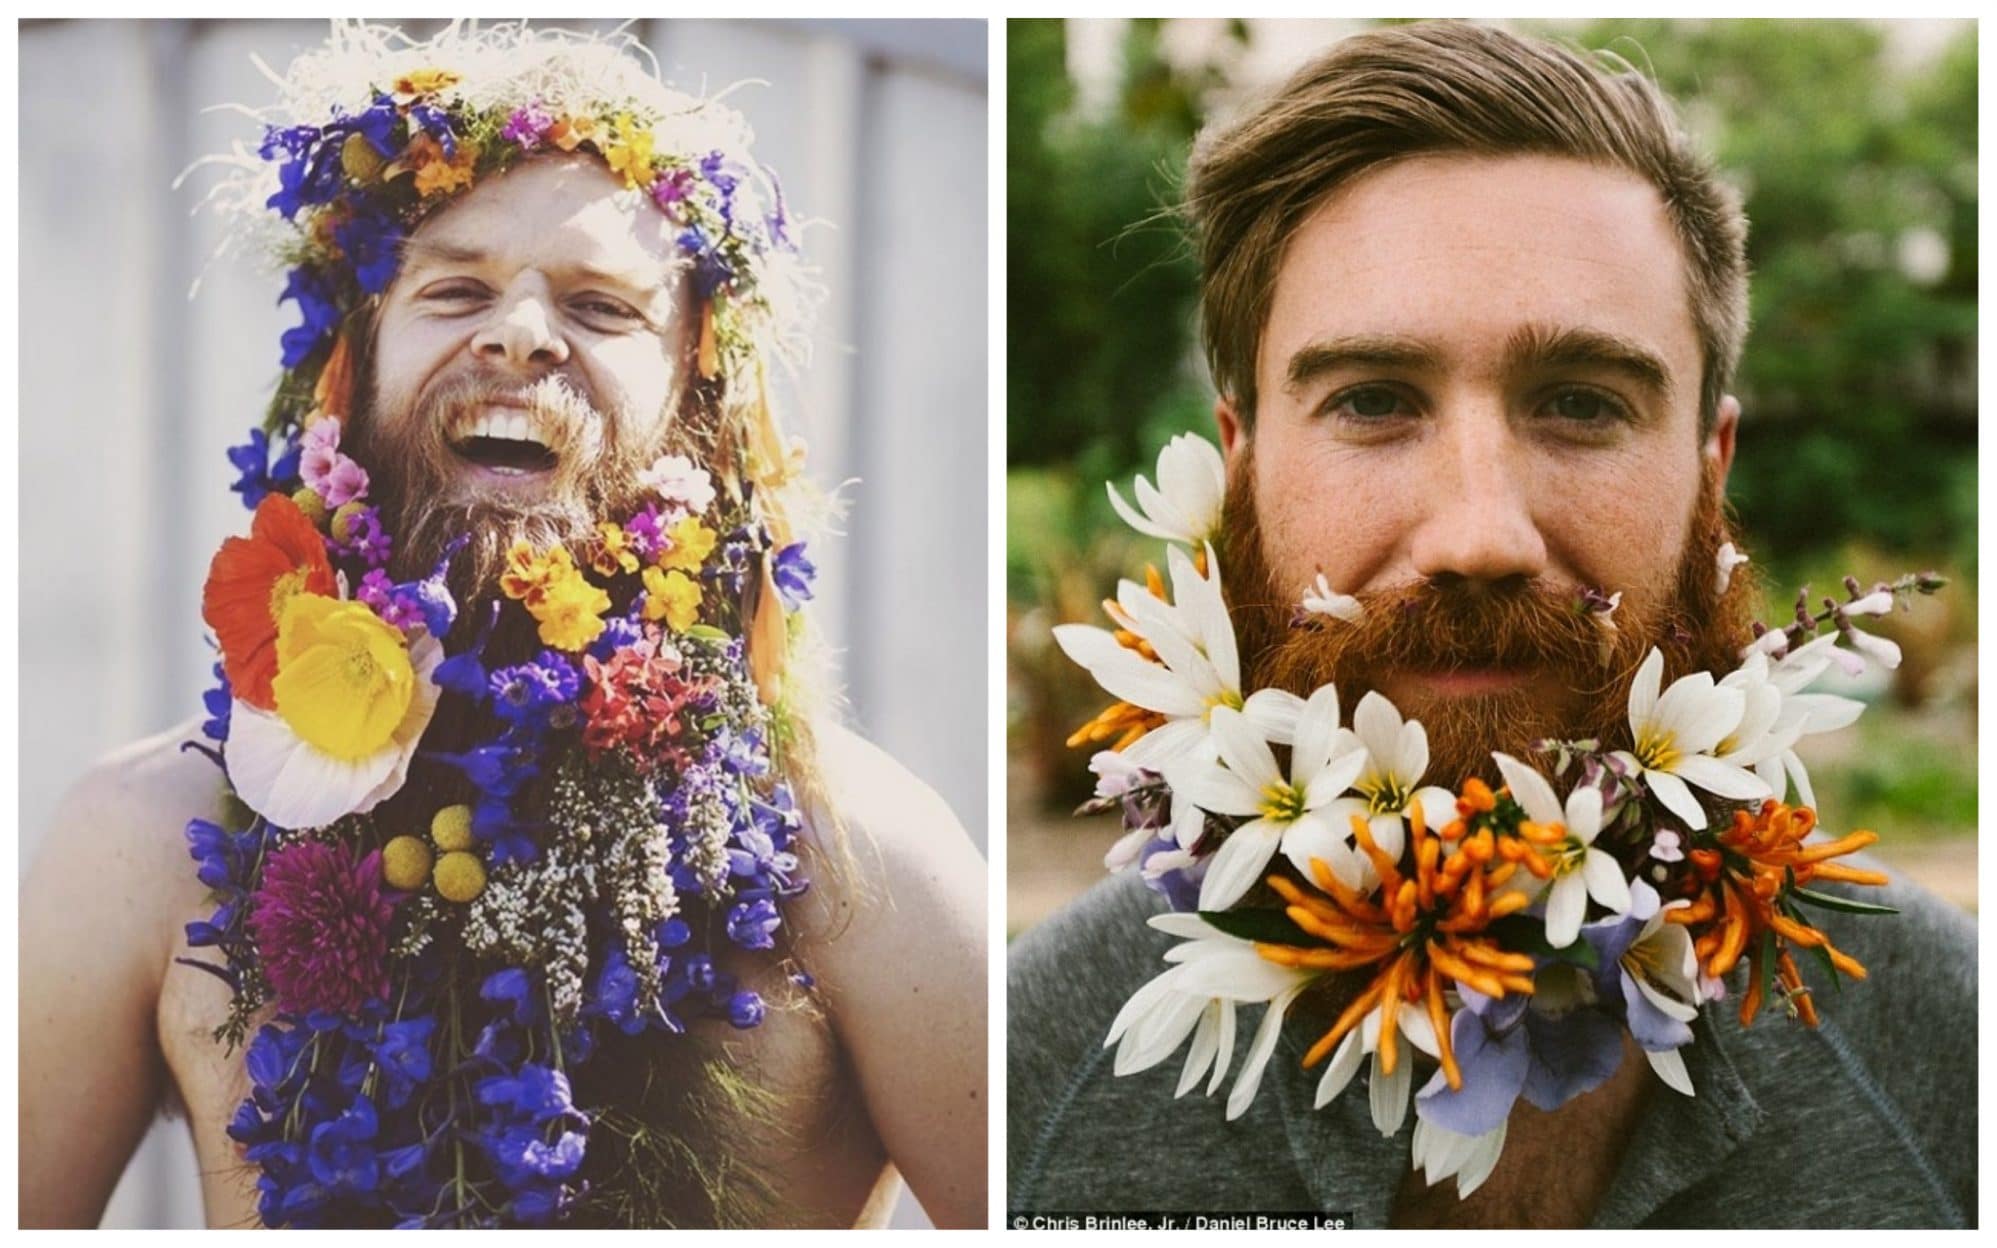 Цветы тебе в бороду! В Инстаграме новый тренд!